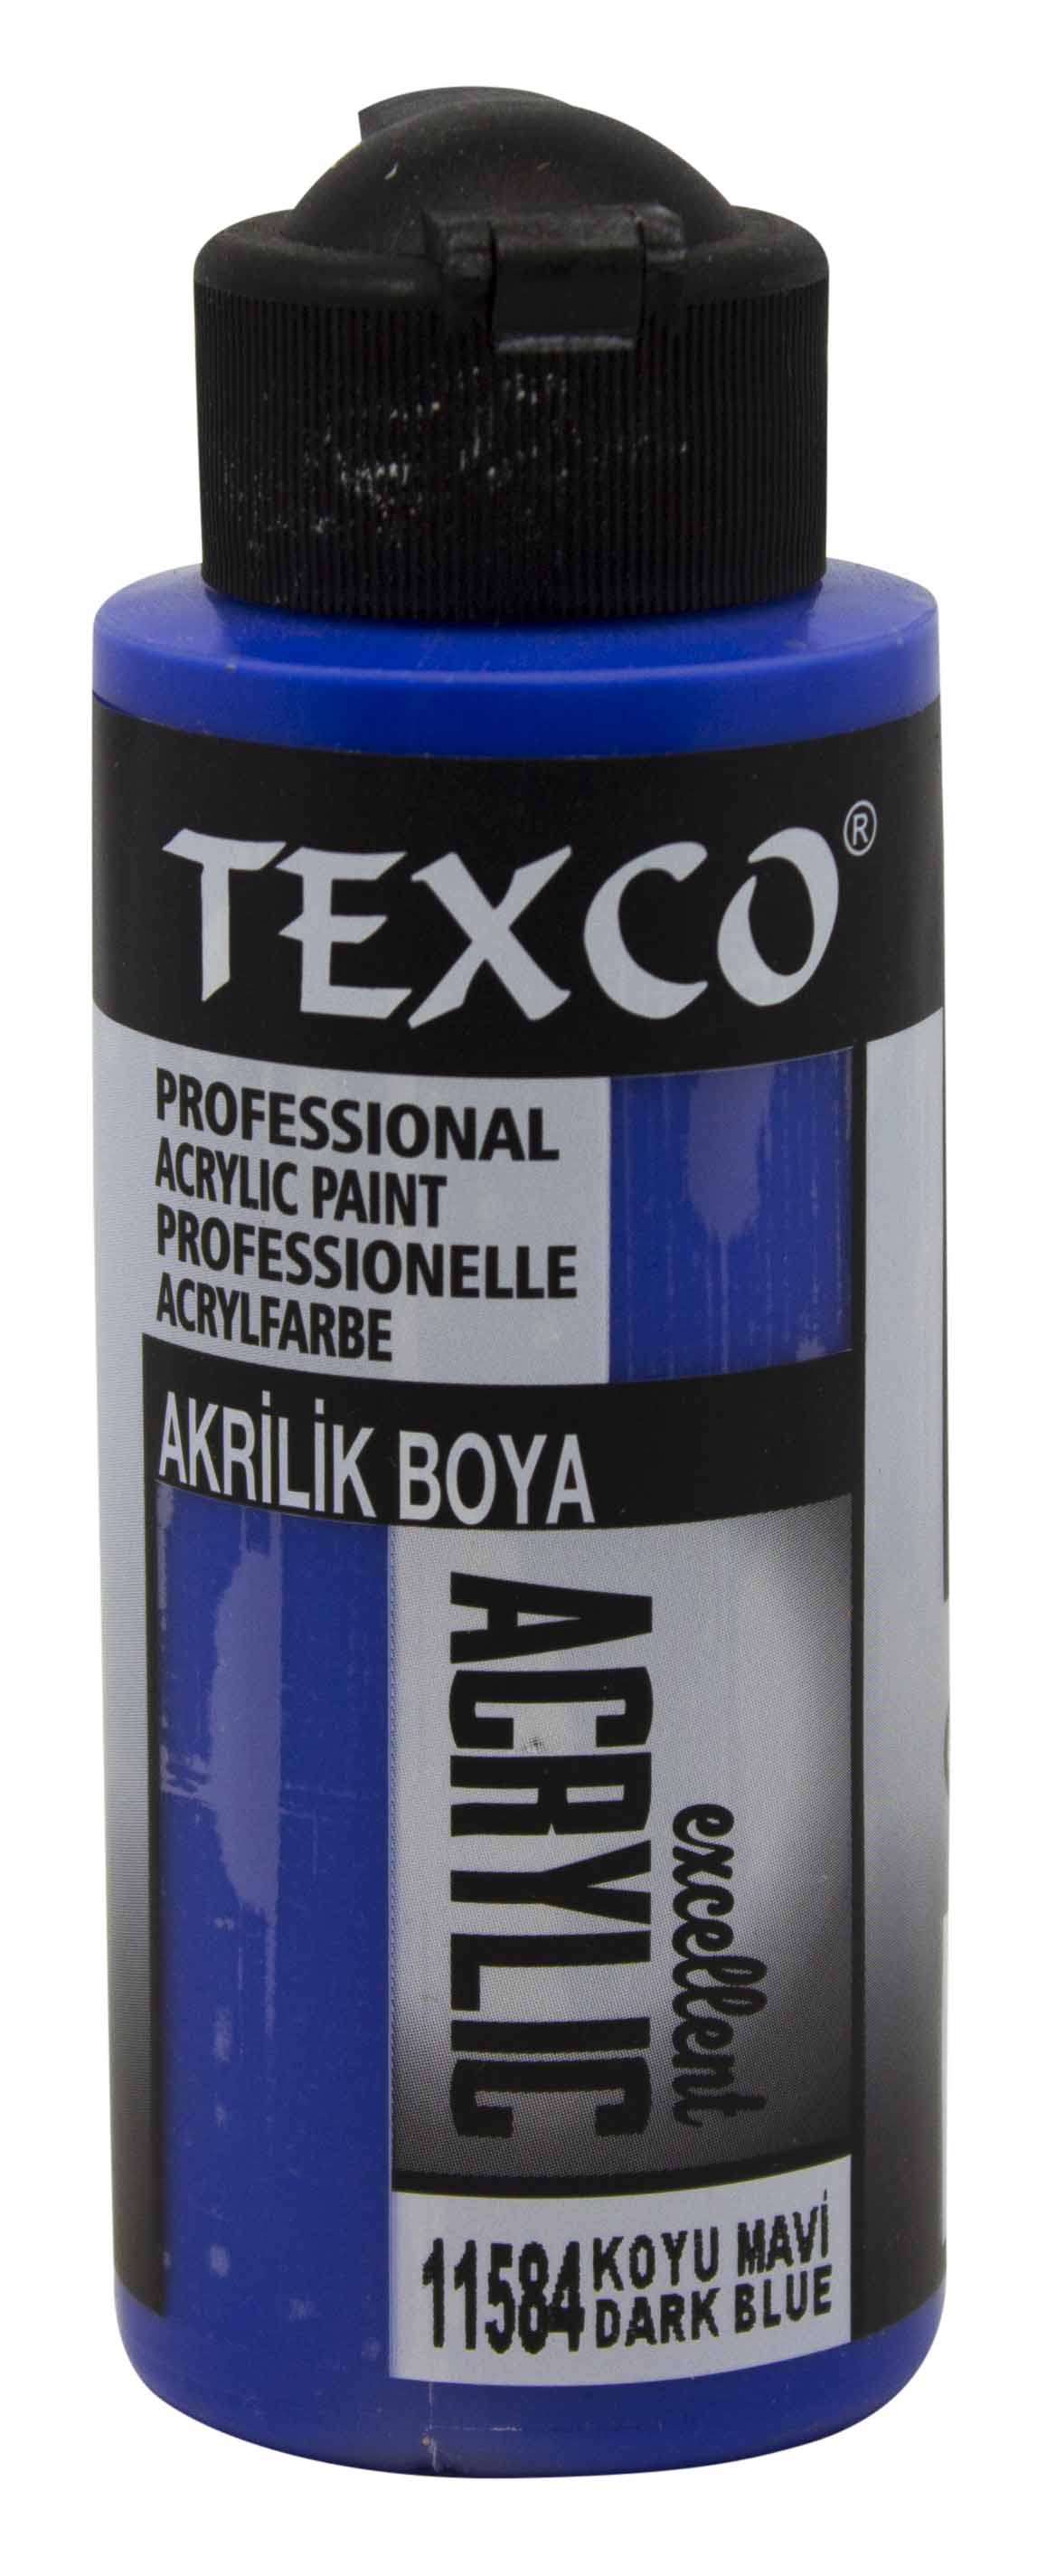 Texco Excellent Akrilik Boya 11584-Koyu Mavi 110 cc